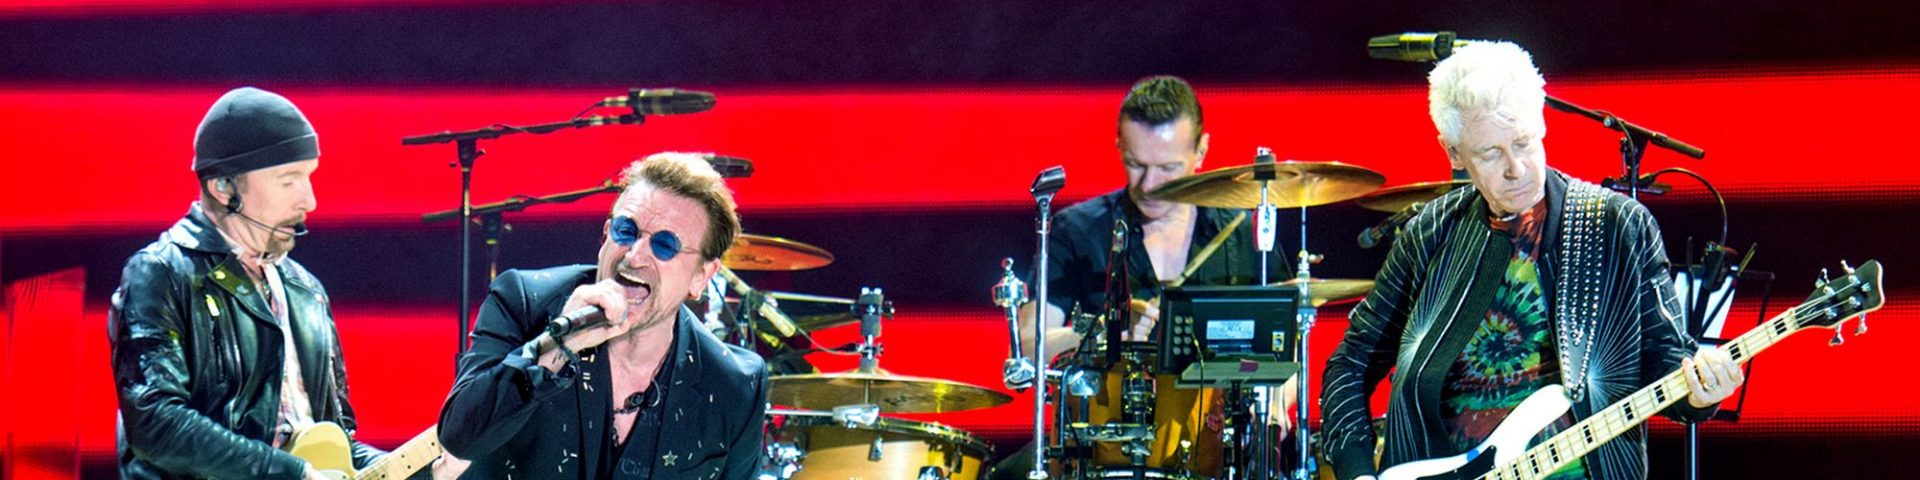 Bono Vox cade dal palco, ma non è l'unico: le 5 migliori cadute dell'anno [VIDEO]